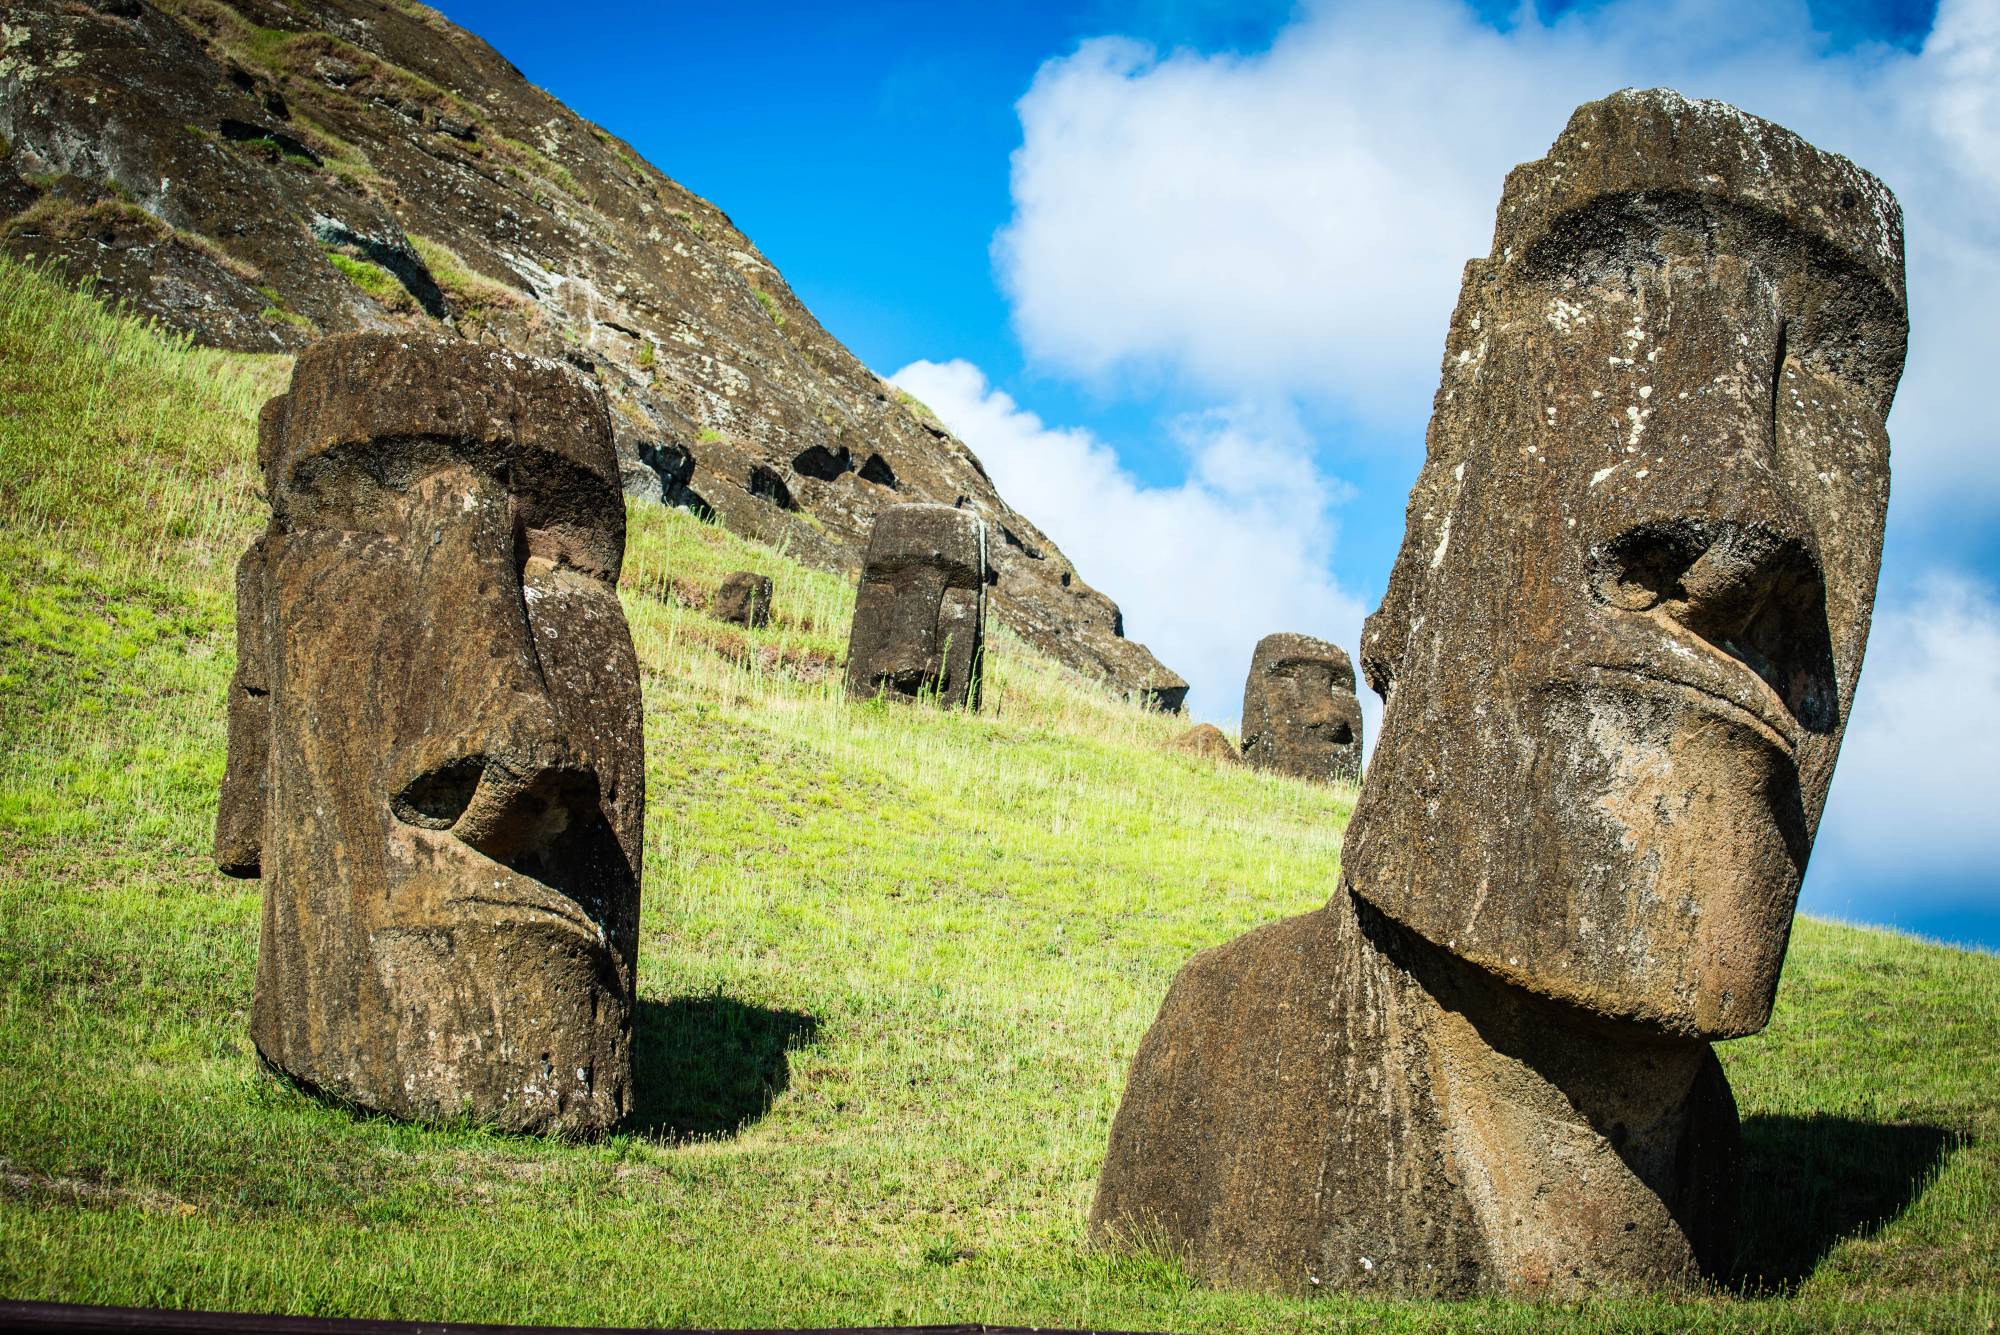 Você sabia que as estátuas da Ilha de Páscoa têm corpos?